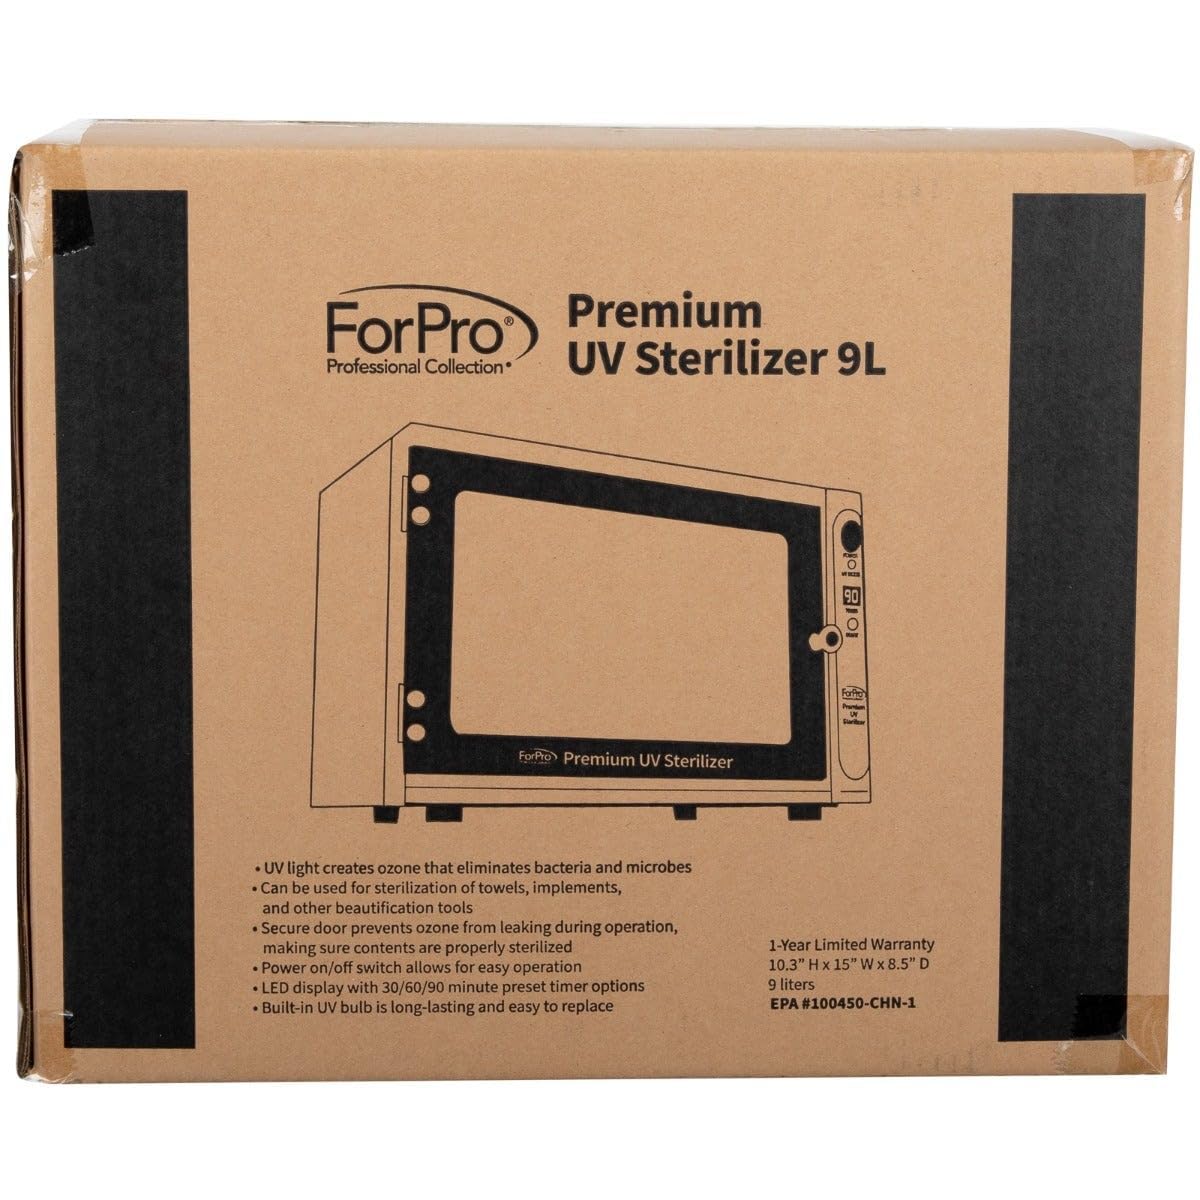 ForPro Premium UV Sterilizer, Large 9L Capacity, Eliminates Bacteria & Microbes, Sterilizes Towels & Implements, 10.3” H x 15” W x 8.5” D